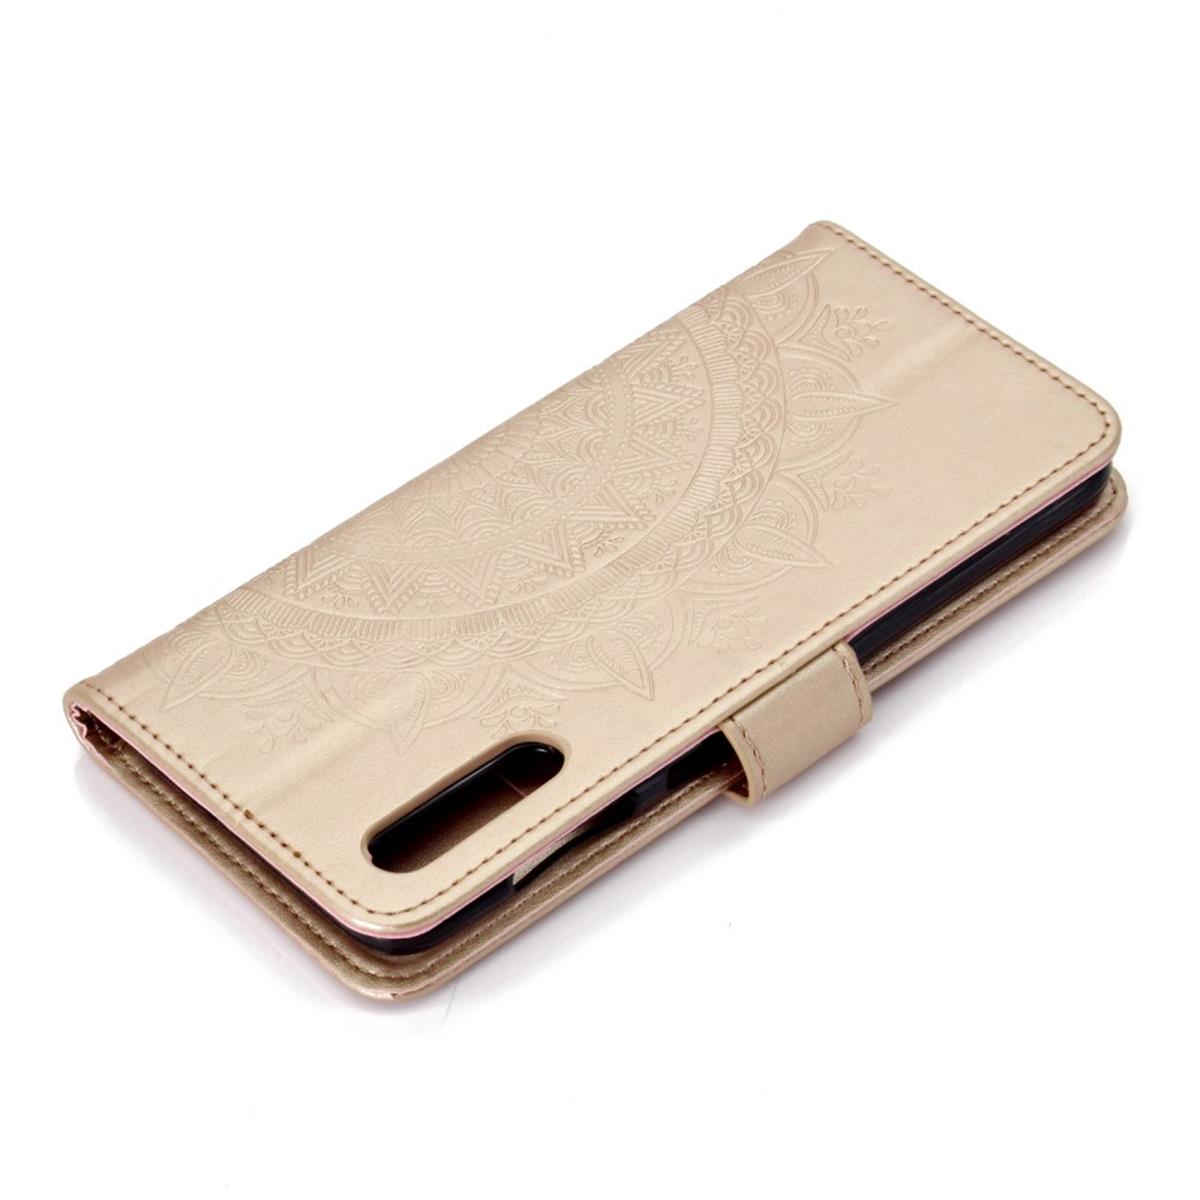 Hülle für Samsung Galaxy A70 Handyhülle Schutz Tasche Case Etui Cover Mandala Gold